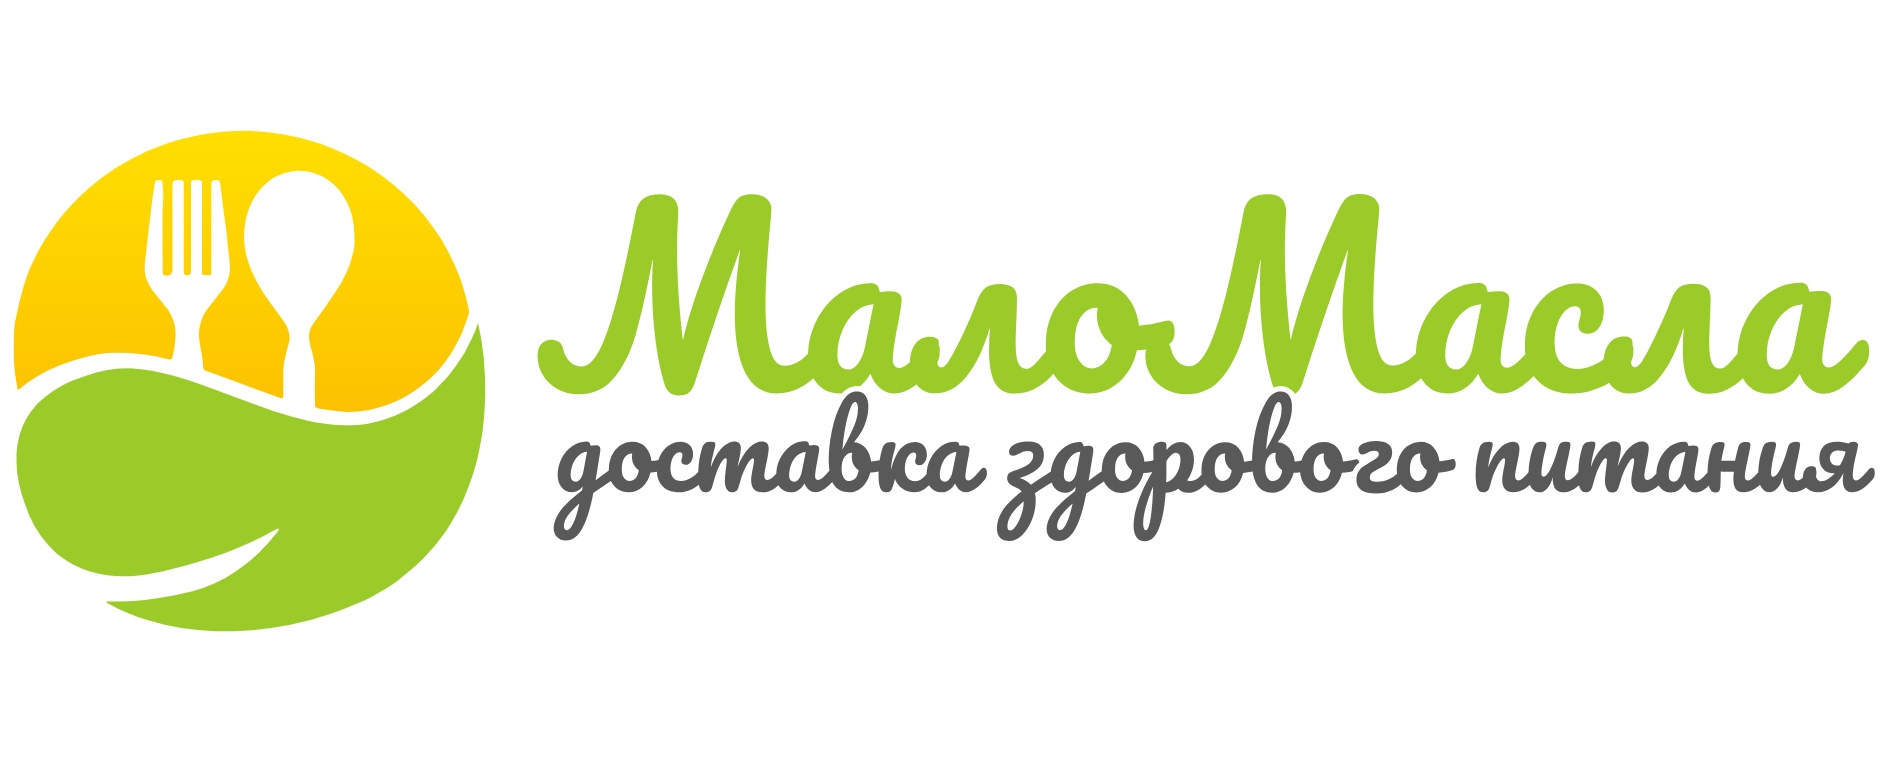 Доставка здоровой еды в Ярославле - МалоМасла